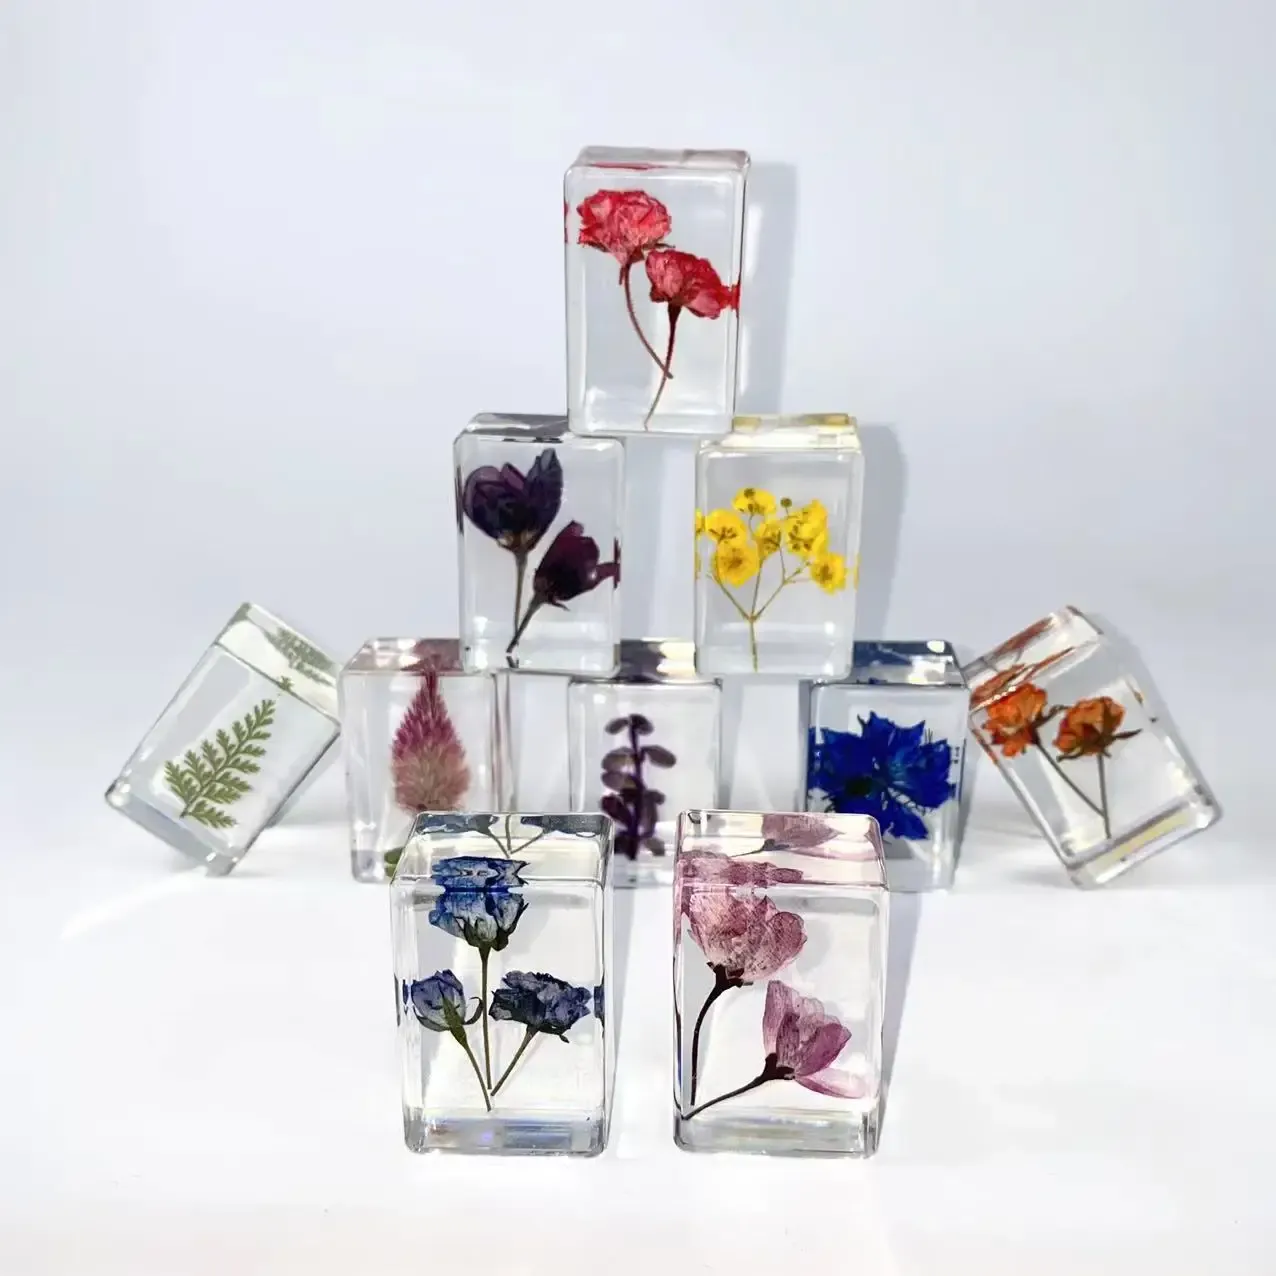 Miniaturen 10 stuks gedroogde bloem specimen heldere hars kubus presse-papier kinderen feestartikelen wetenschappelijk educatief speelgoed kantoor tafel decor